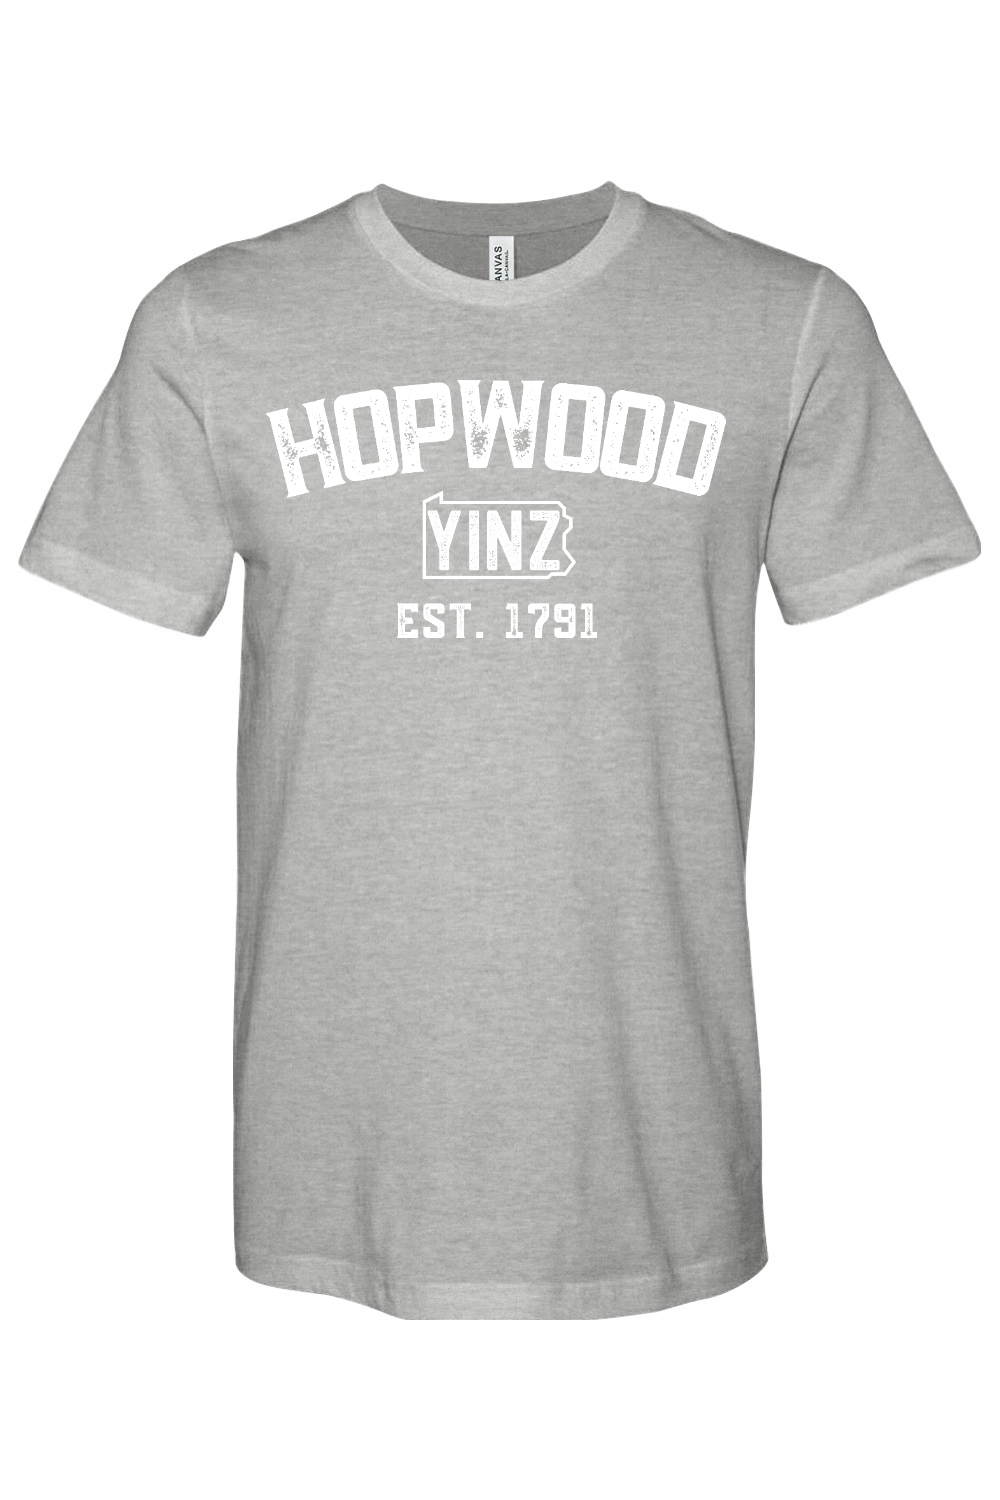 Hopwood Yinzylvania - Yinzylvania